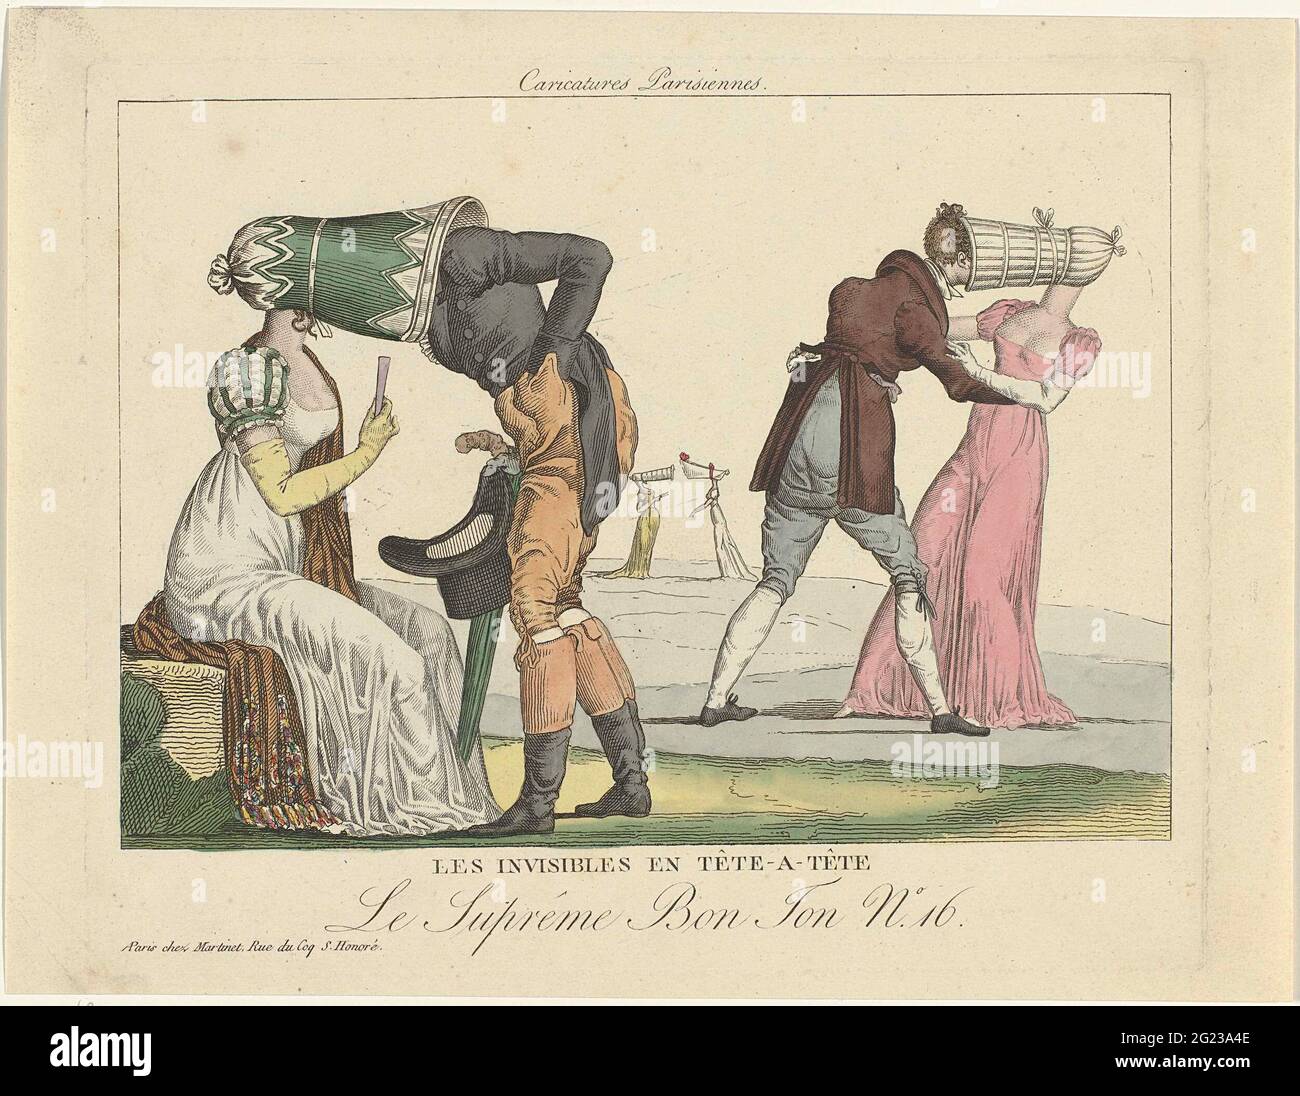 Le Suprême bon ton, caricatures parisiennes, 1800-1815, No.16: Les  invisibles et tête-A-tête .. Caricature sur les grands chapeaux d'auvent  qui étaient à la mode autour de 1800-1815. Deux revêtements à la mode,